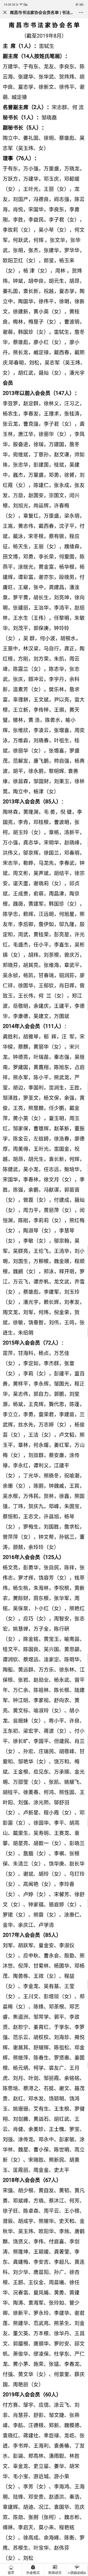 南昌市书法家协会会员名单(补充修正版)